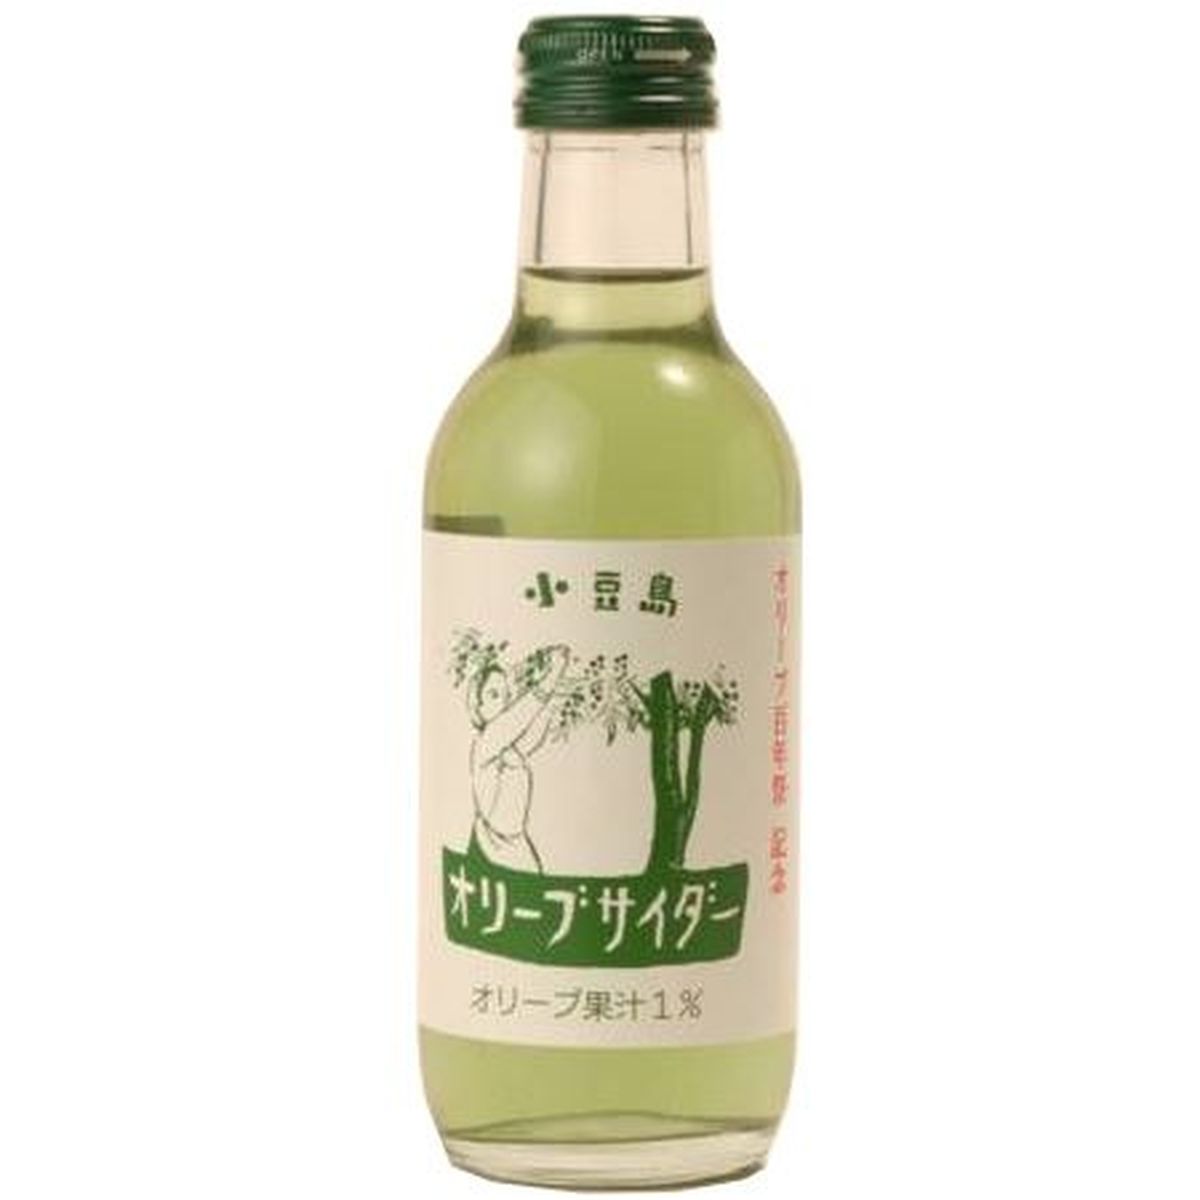 【24個入リ】友桝飲料 オリーブサイダー 瓶 200ml